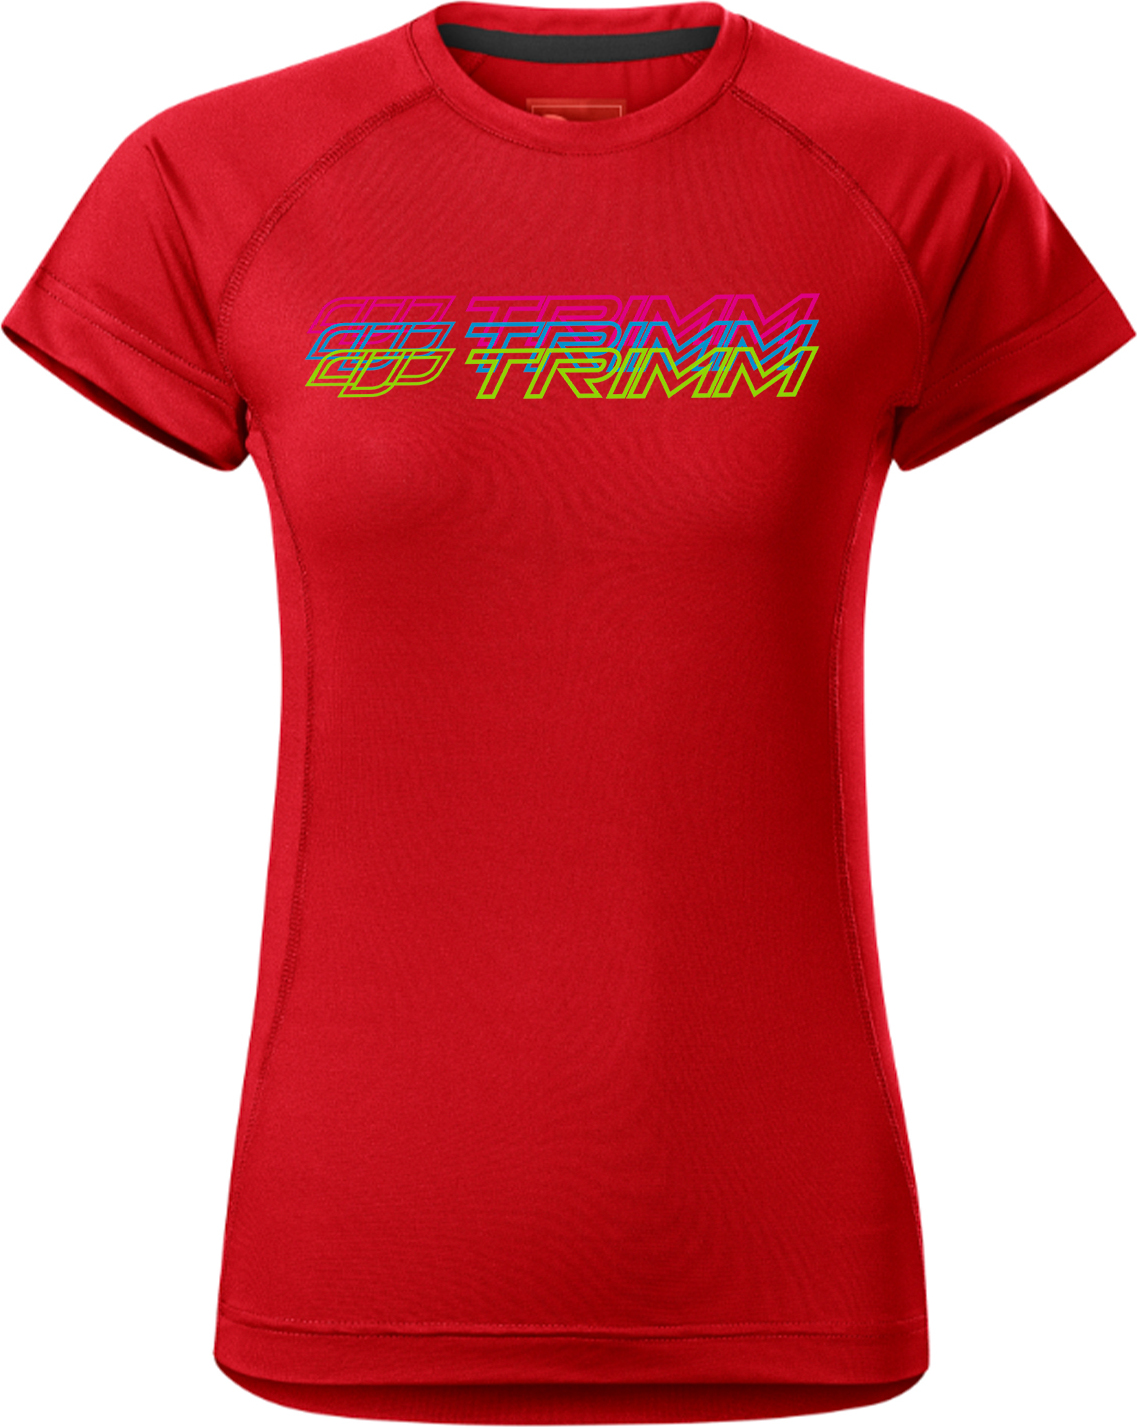 Dámské tričko TRIMM Destiny Lady červené Velikost: XS, Barva: red